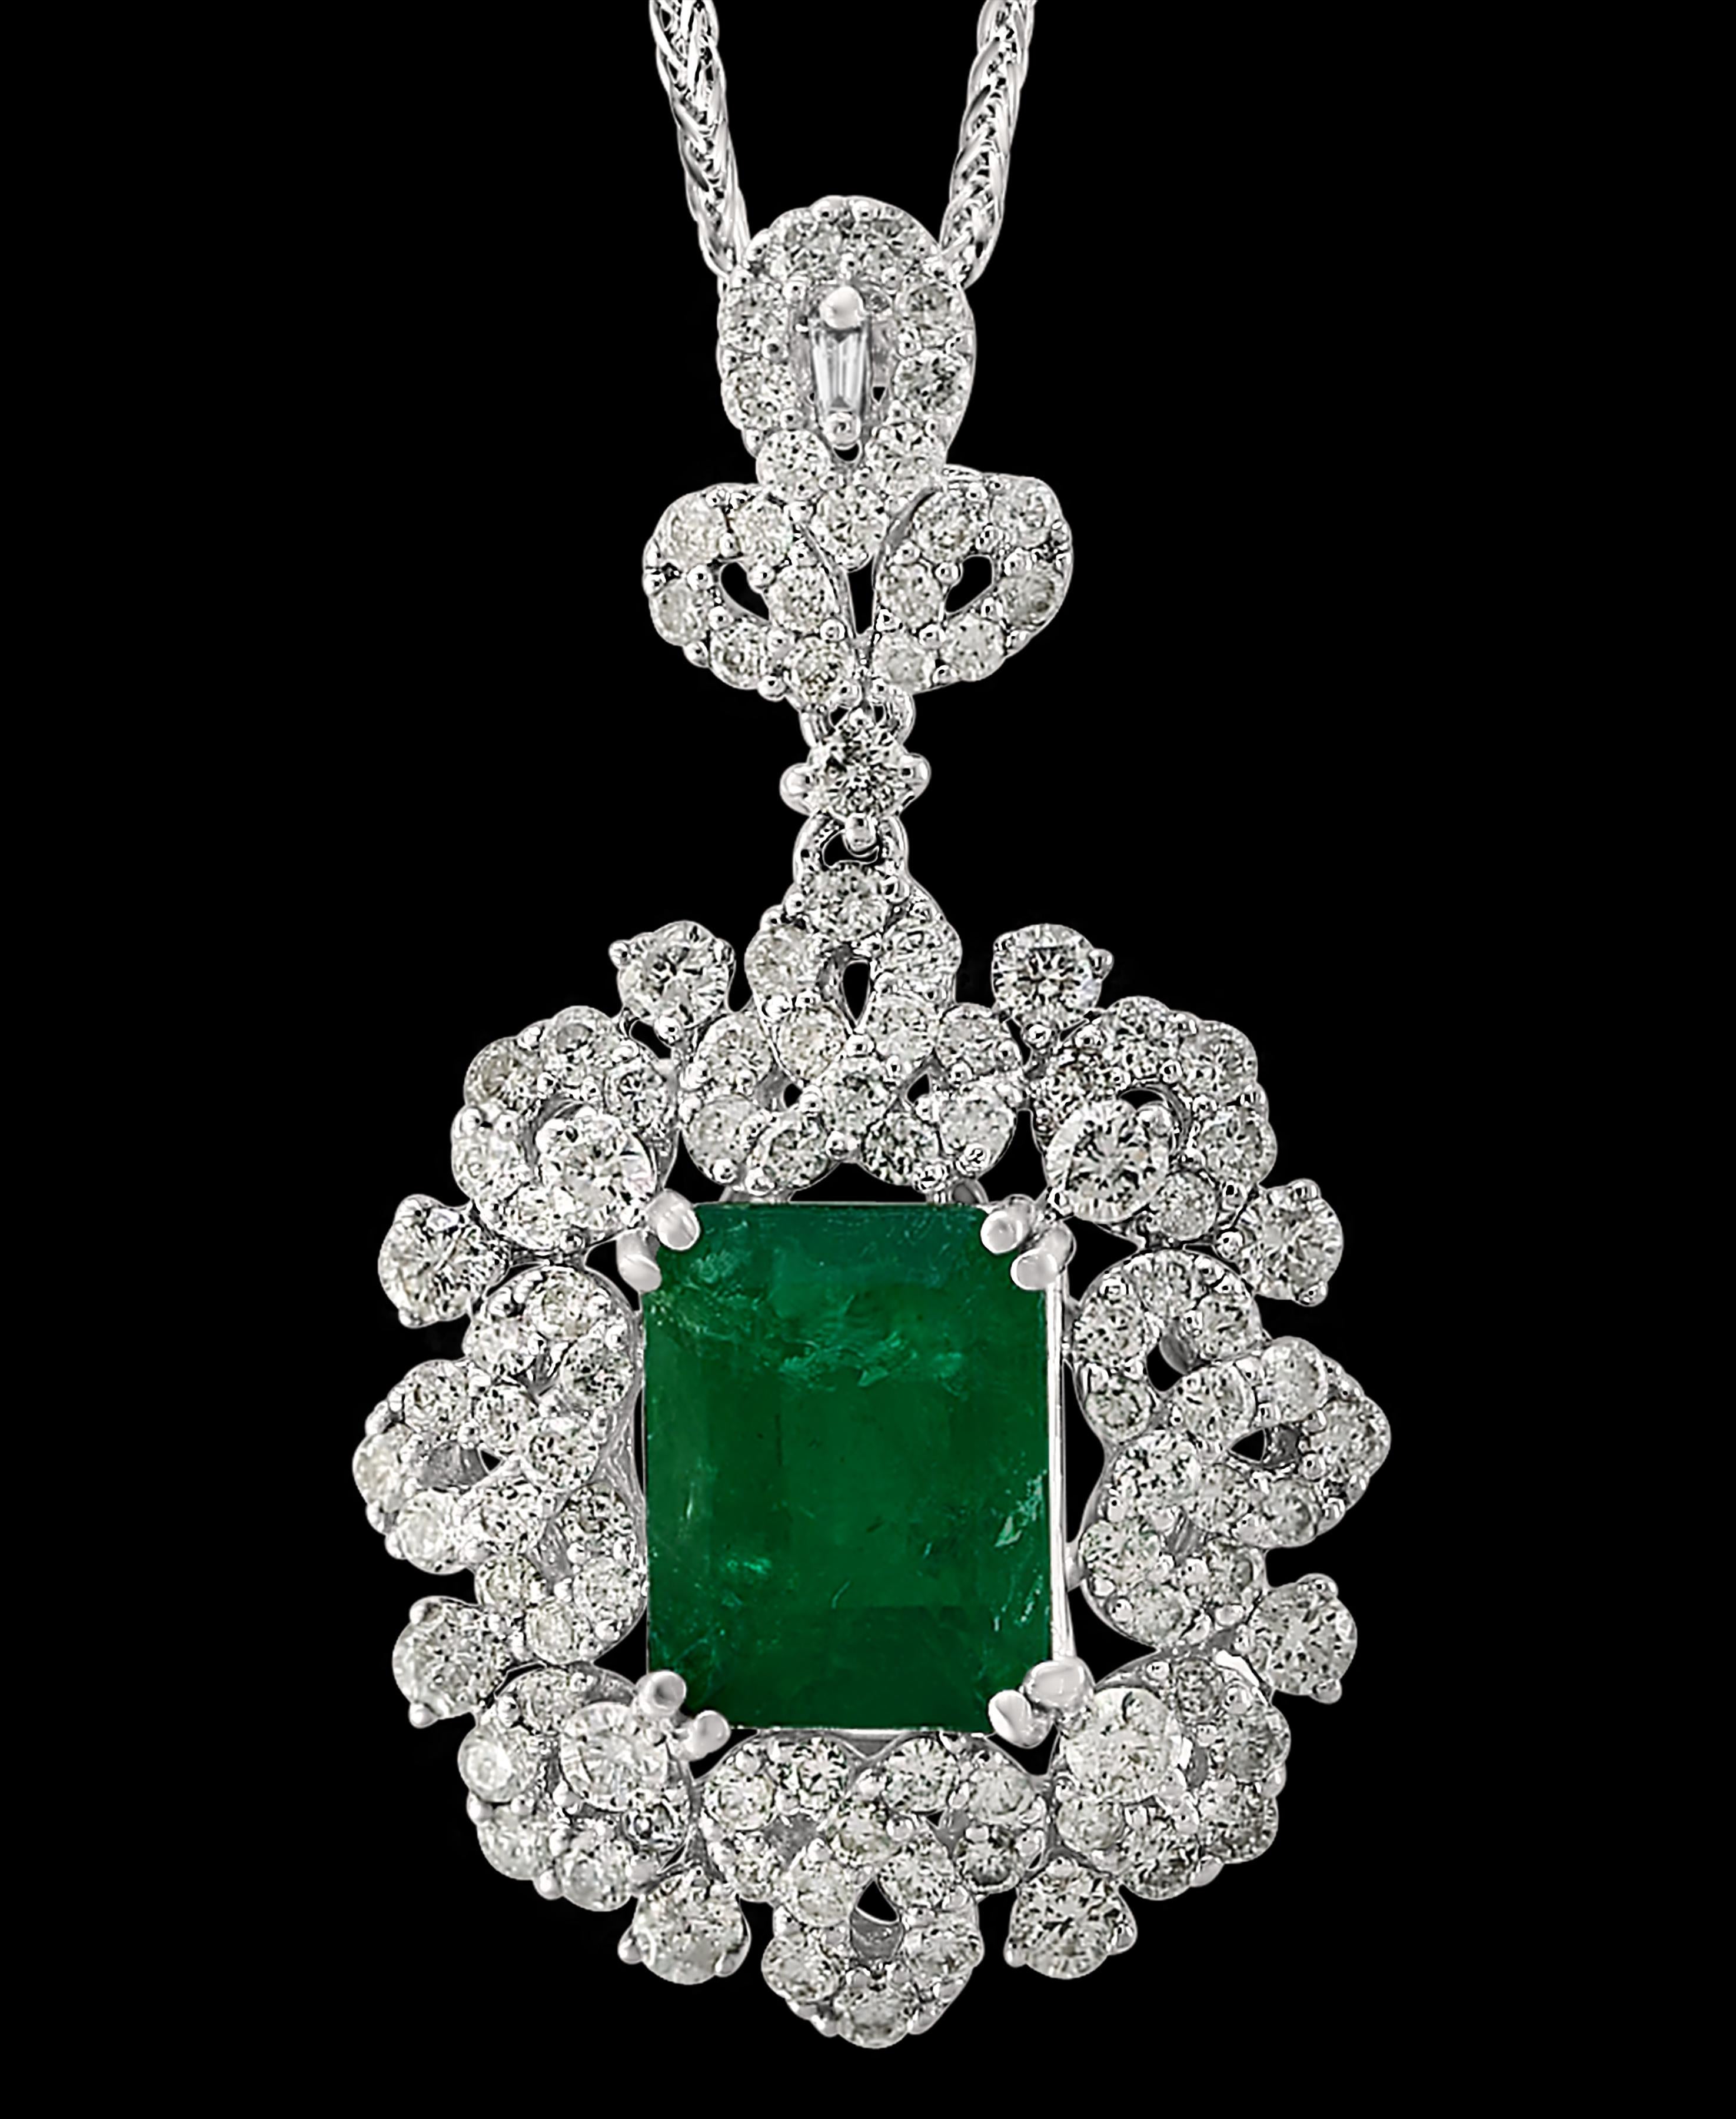 4.5 carat emerald cut diamond